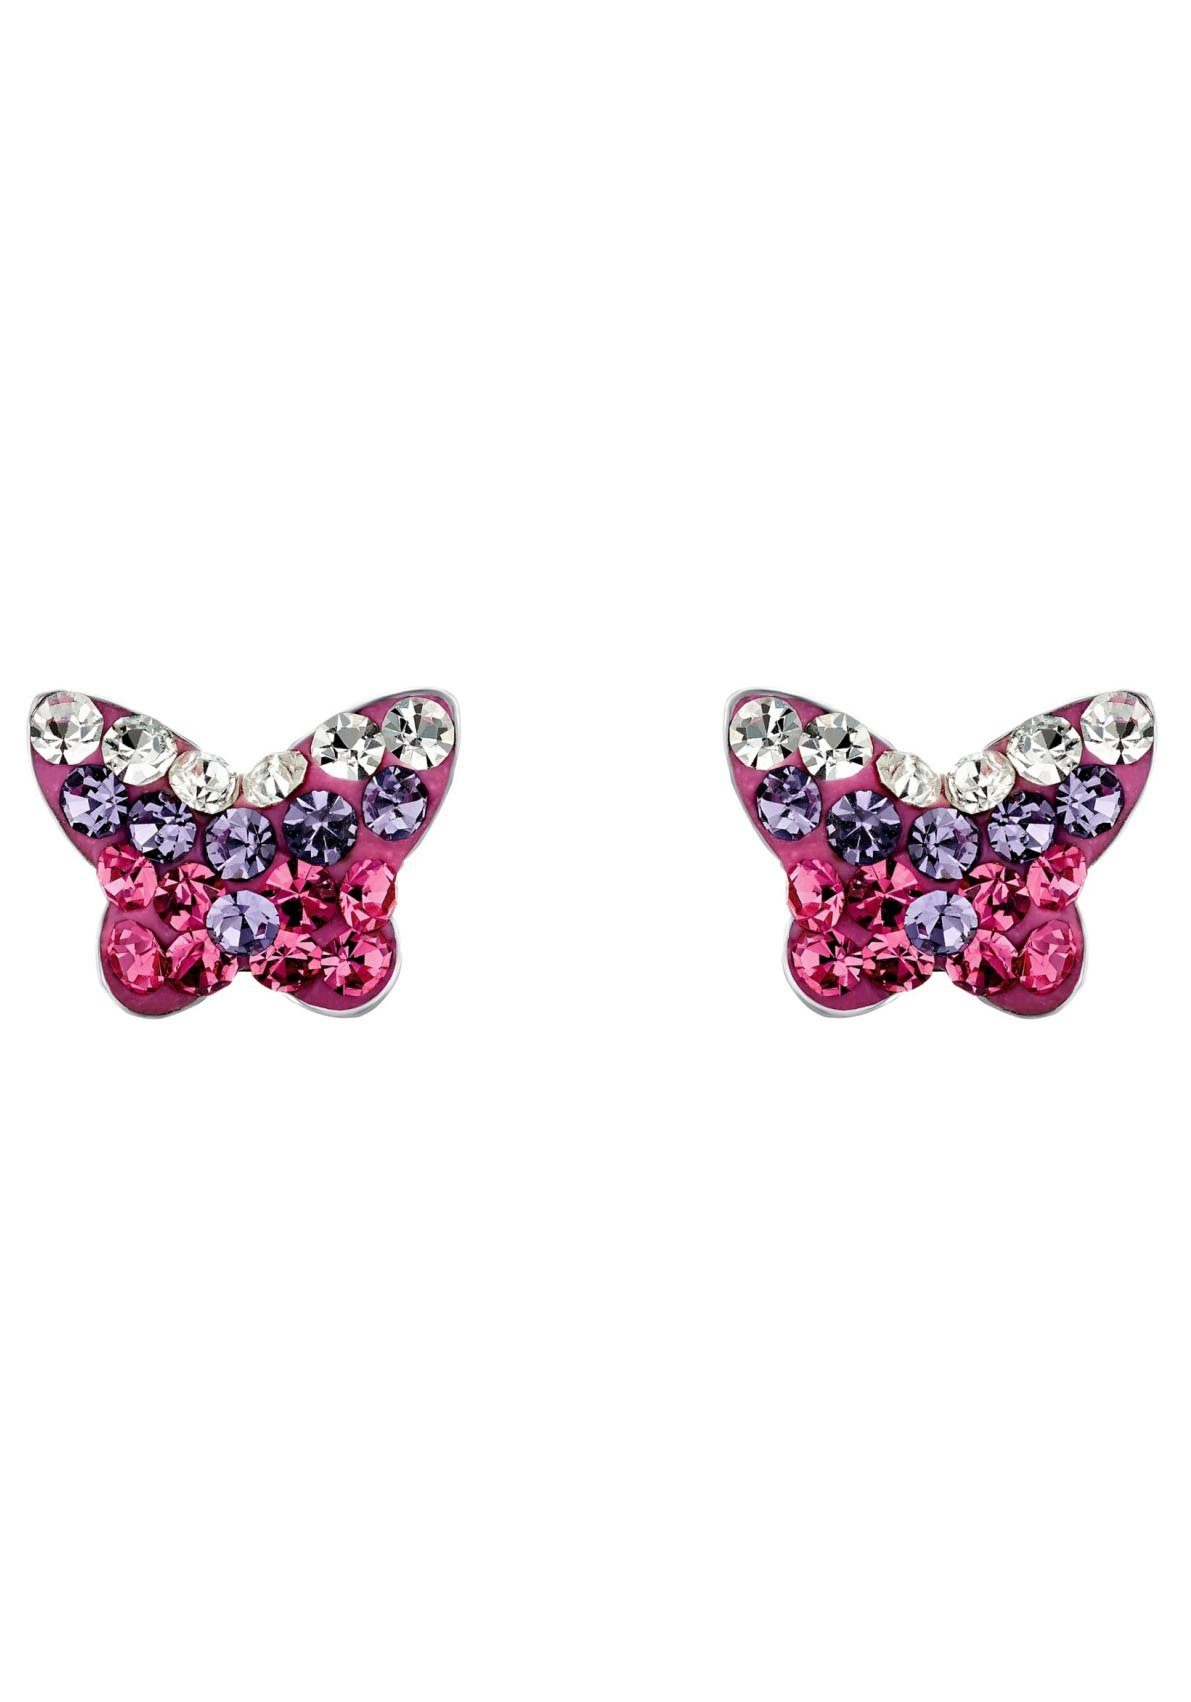 9540709, Ohrstecker Glasstein Schmetterling, Paar Amor mit 2036780, silberfarben-pink-violett